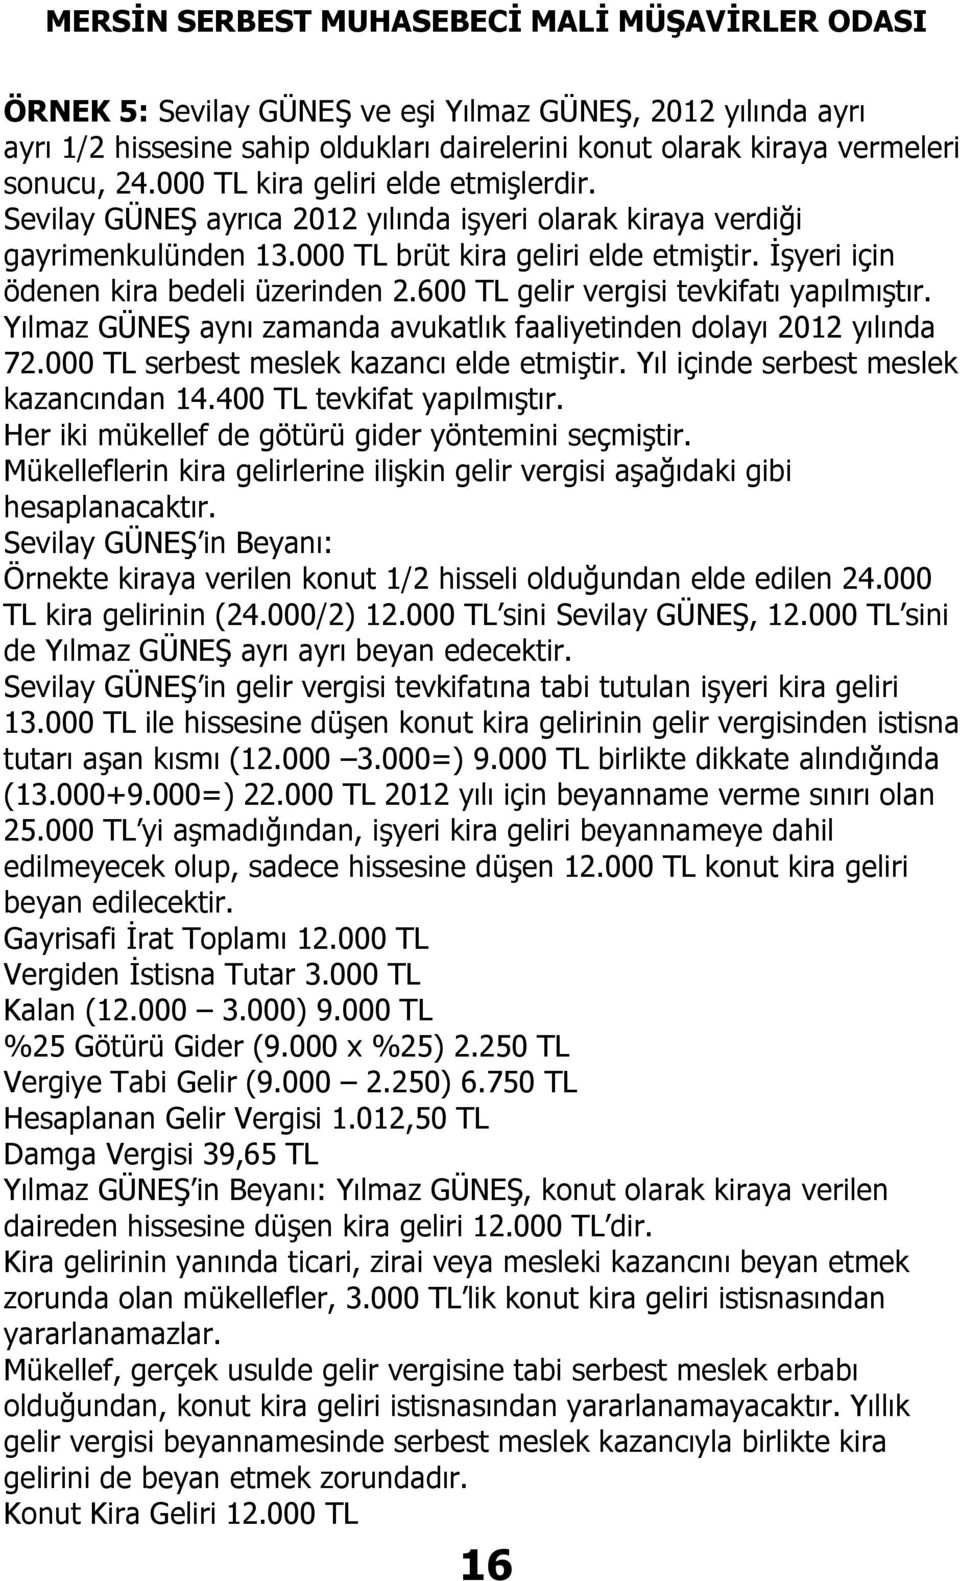 600 TL gelir vergisi tevkifatı yapılmıştır. Yılmaz GÜNEŞ aynı zamanda avukatlık faaliyetinden dolayı 2012 yılında 72.000 TL serbest meslek kazancı elde etmiştir.